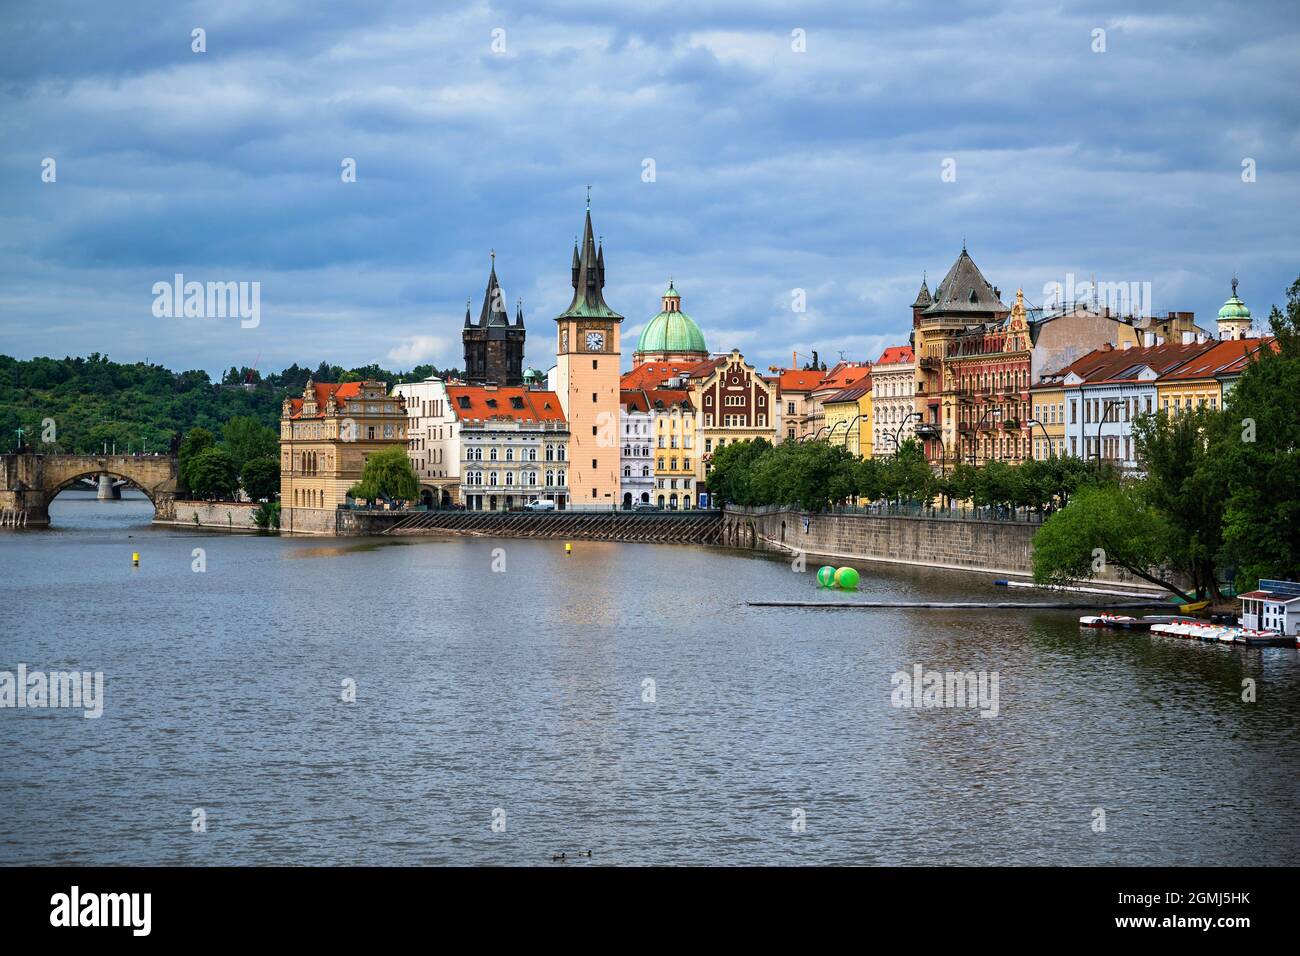 Rivière Vltava près du front de mer de Smetanovo, tour du pont de la vieille ville et partie du pont historique Charles, Prague, République tchèque. Banque D'Images